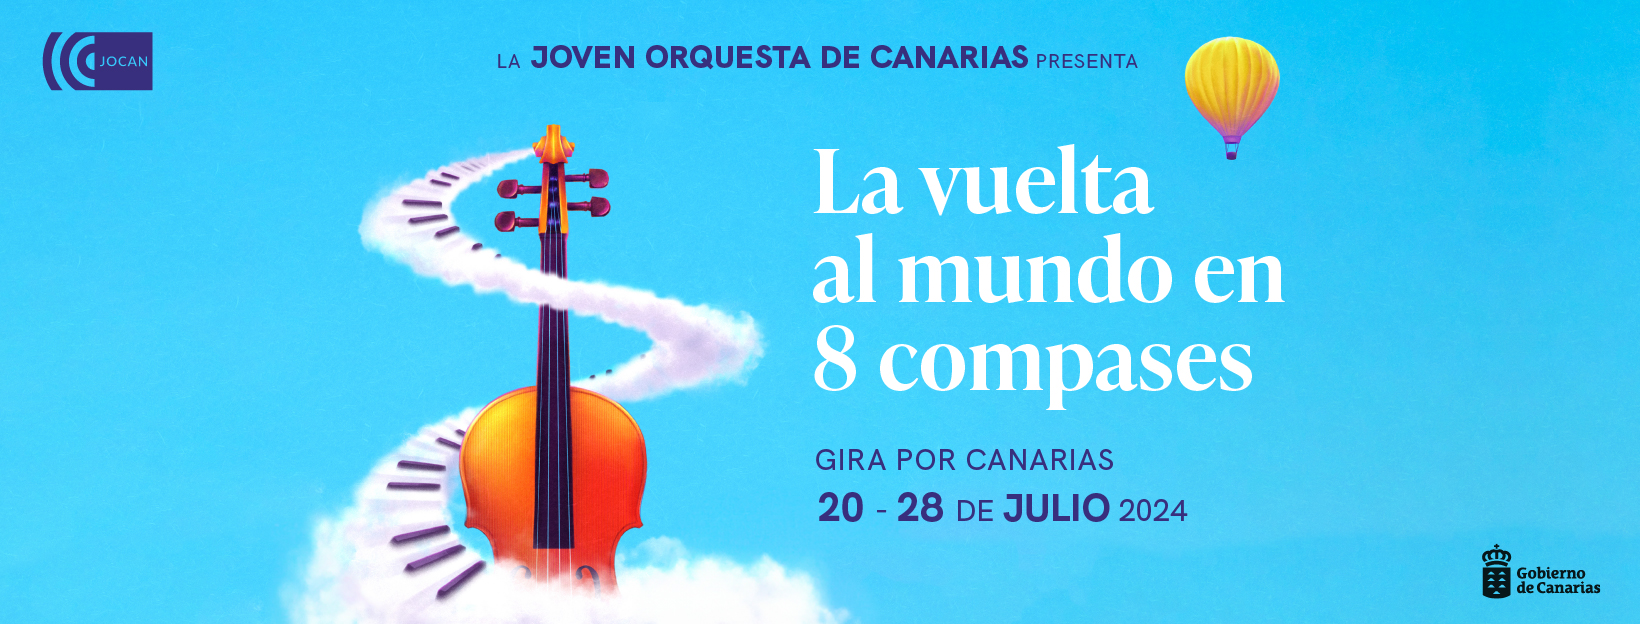 La Joven Orquesta de Canarias recorrerá las ocho islas en una nueva gira de verano